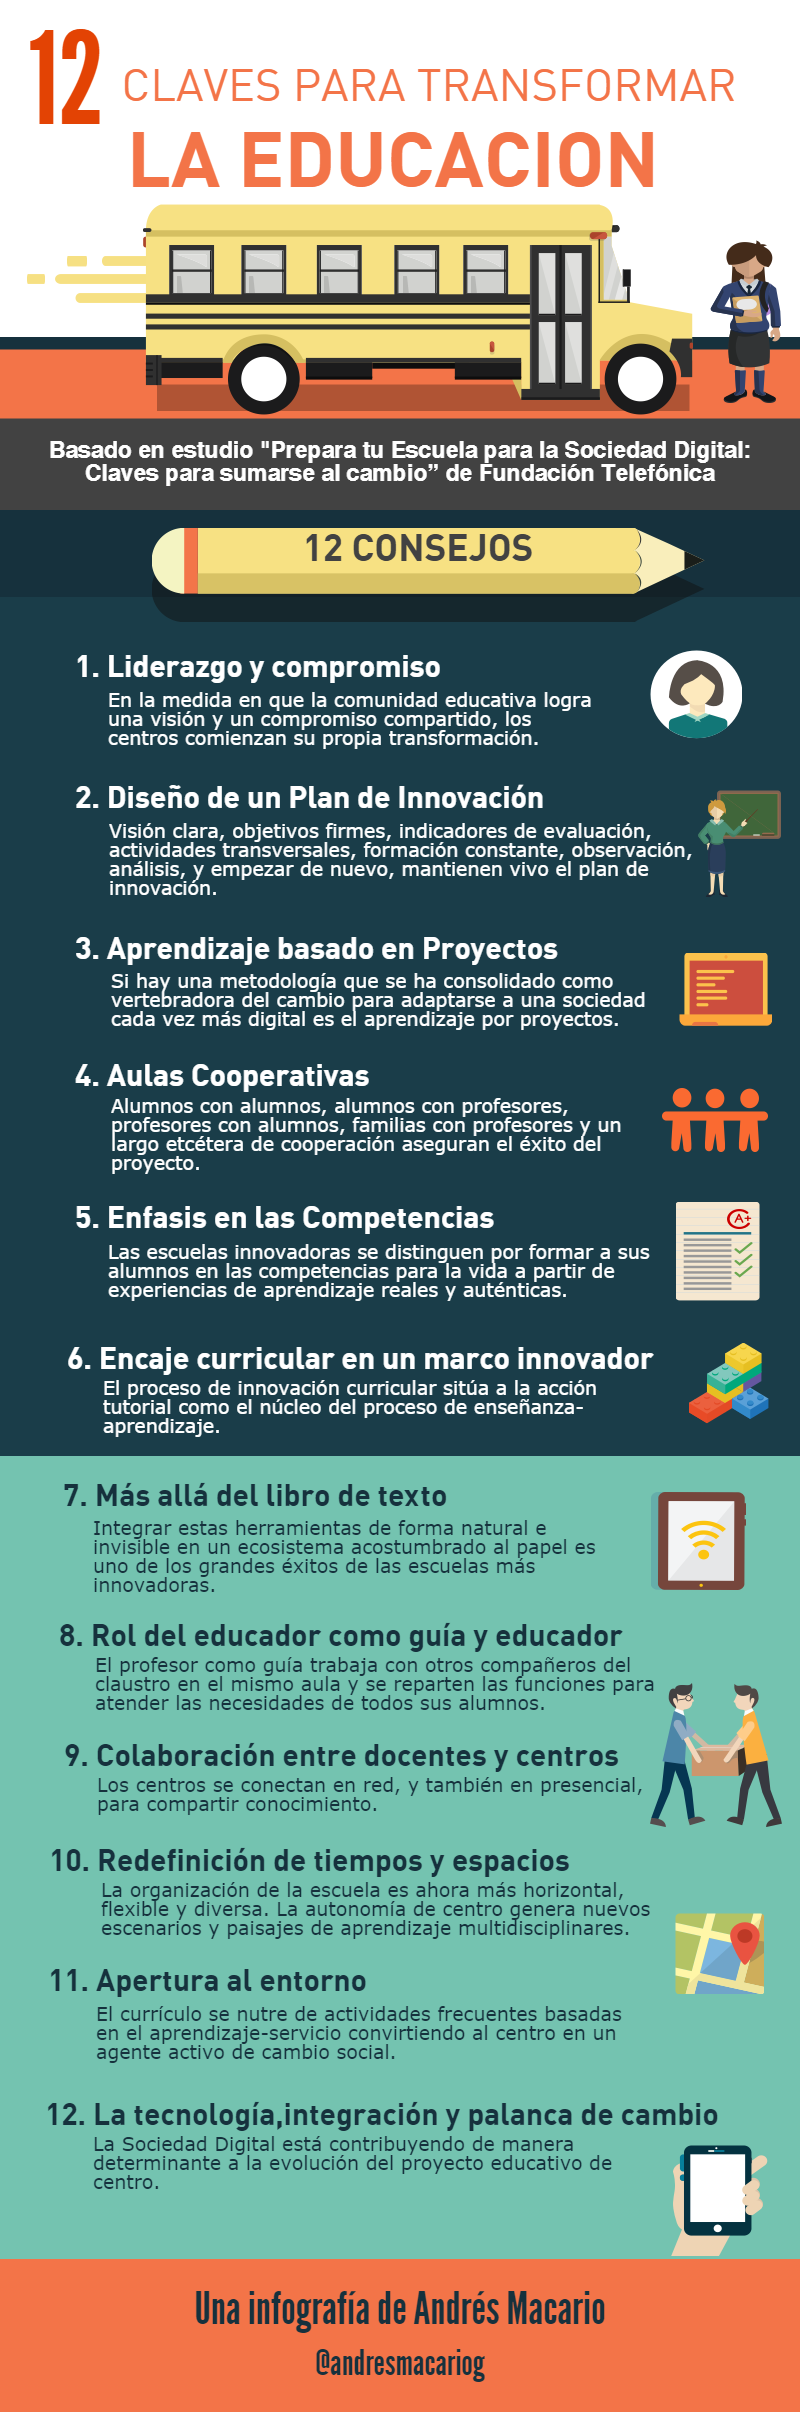 12 claves para transformar la educacion-Infografia Andres Macario